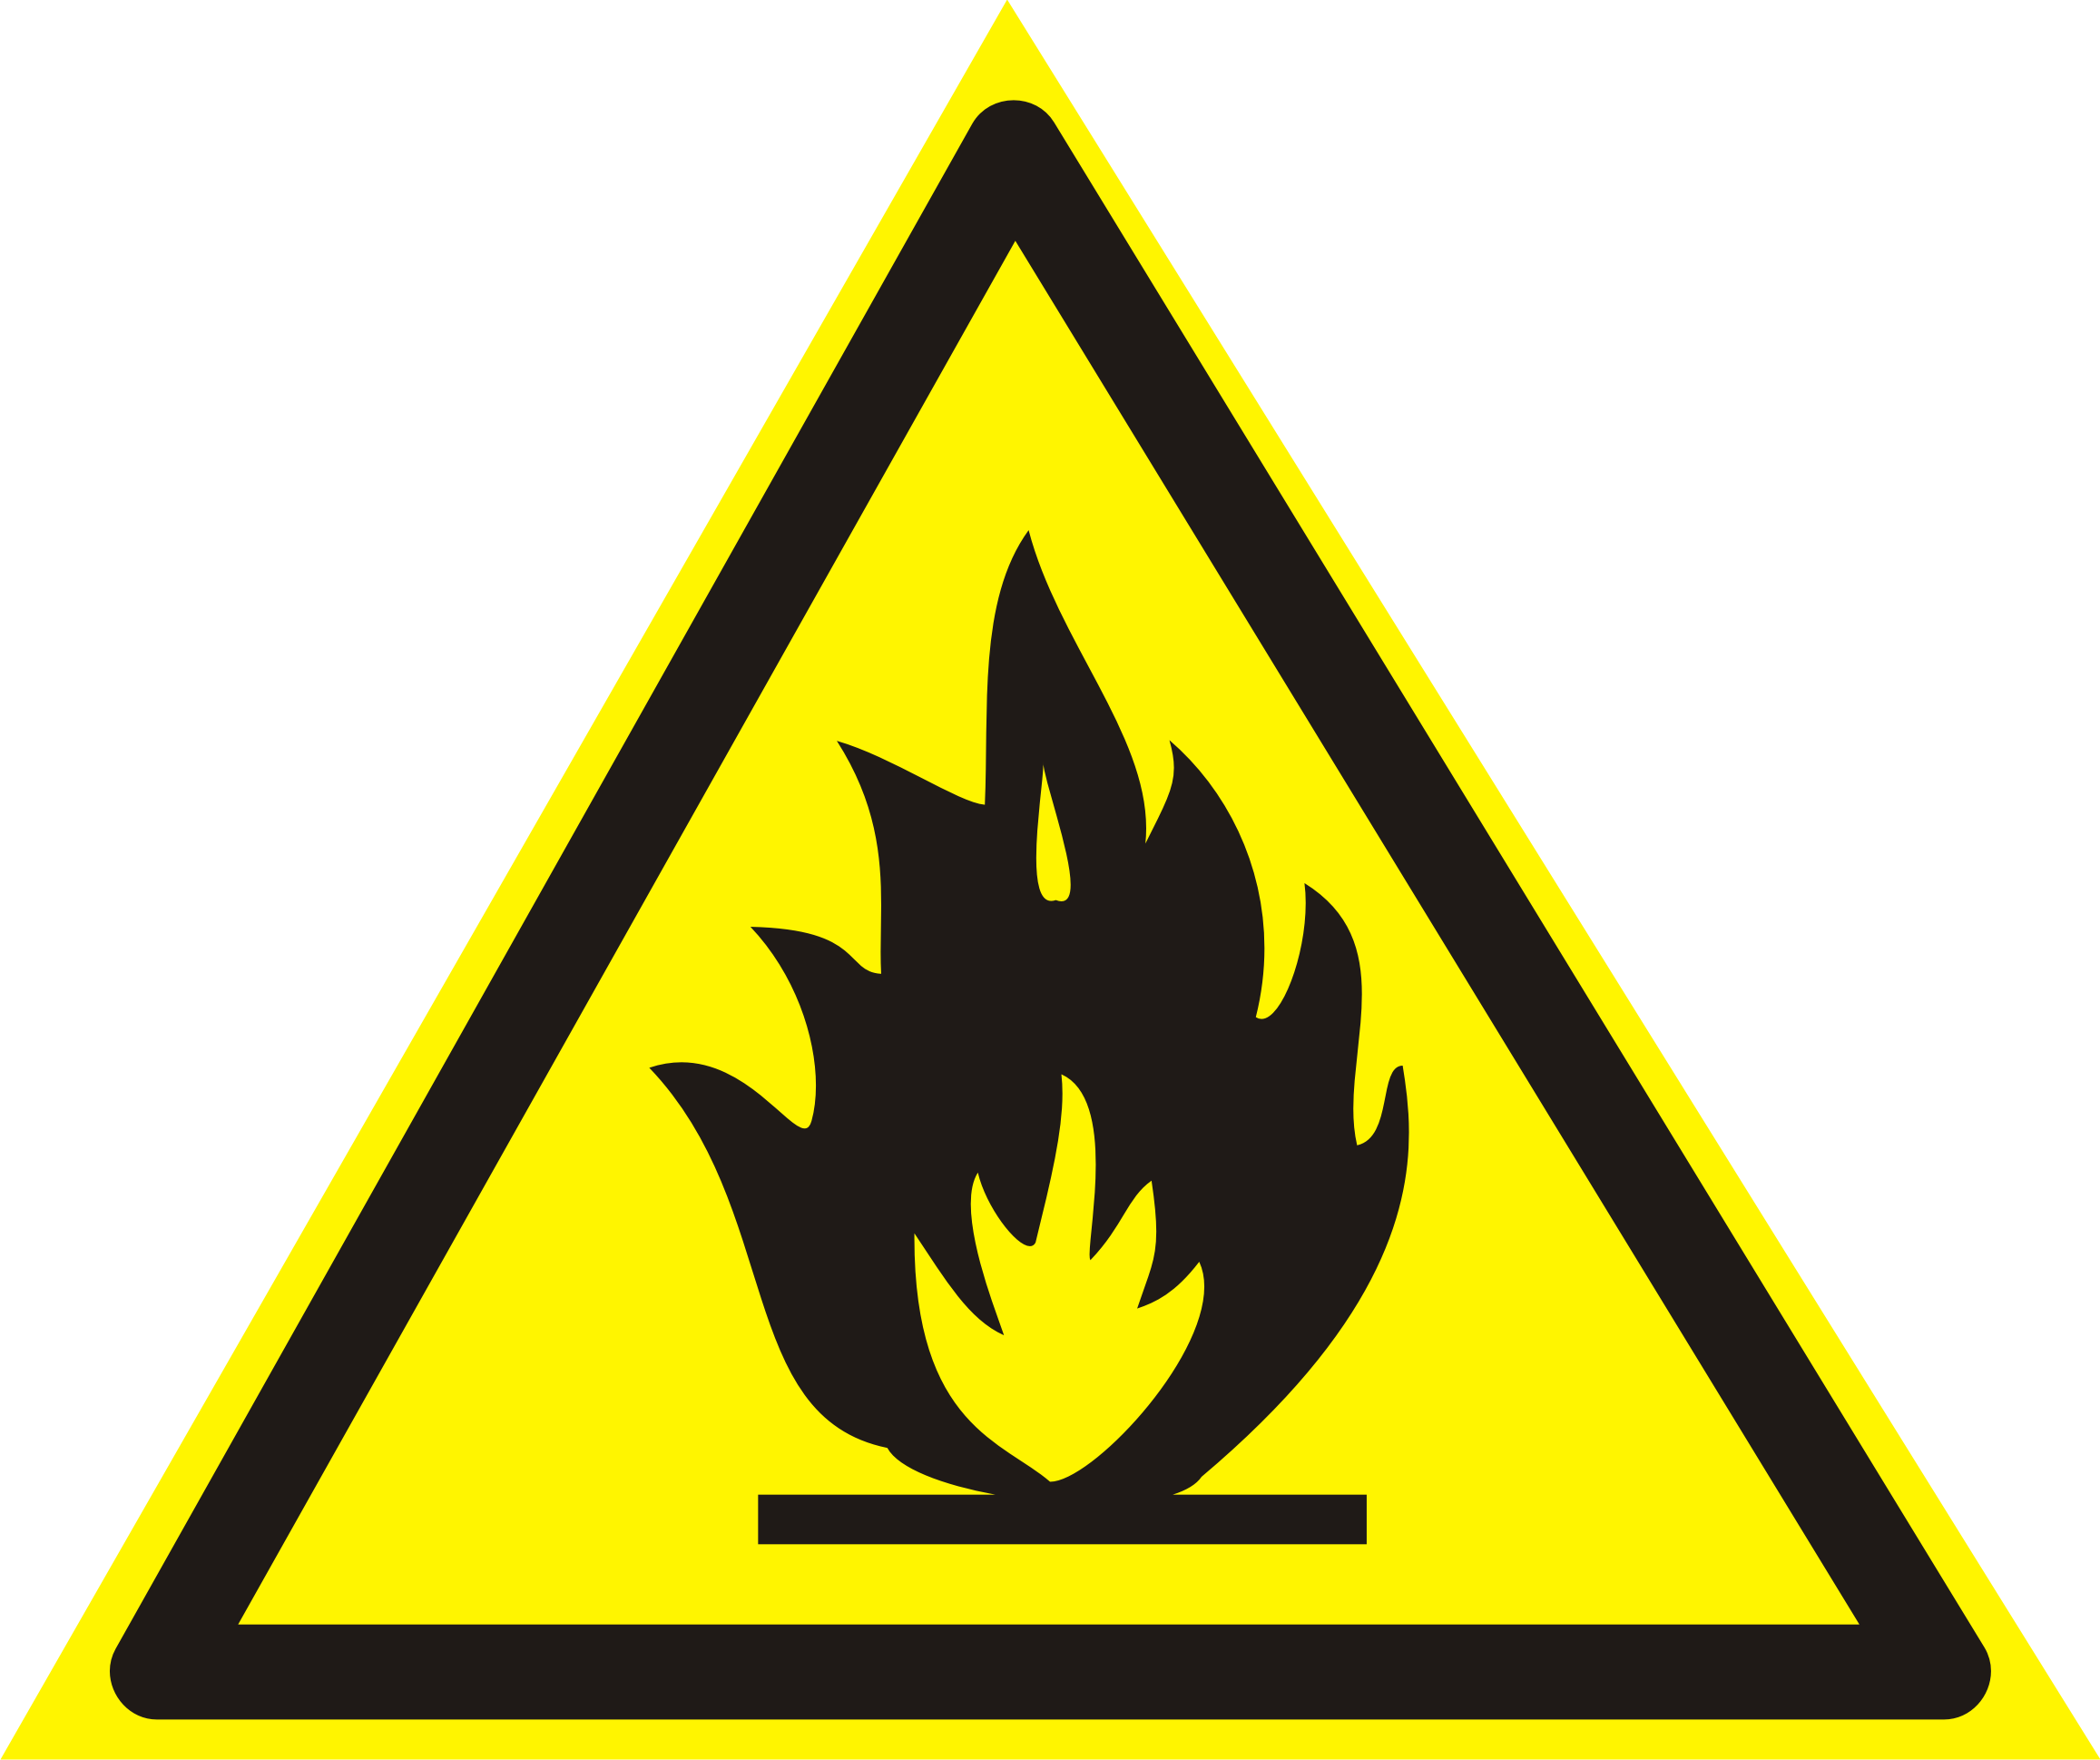 fire hazard sign